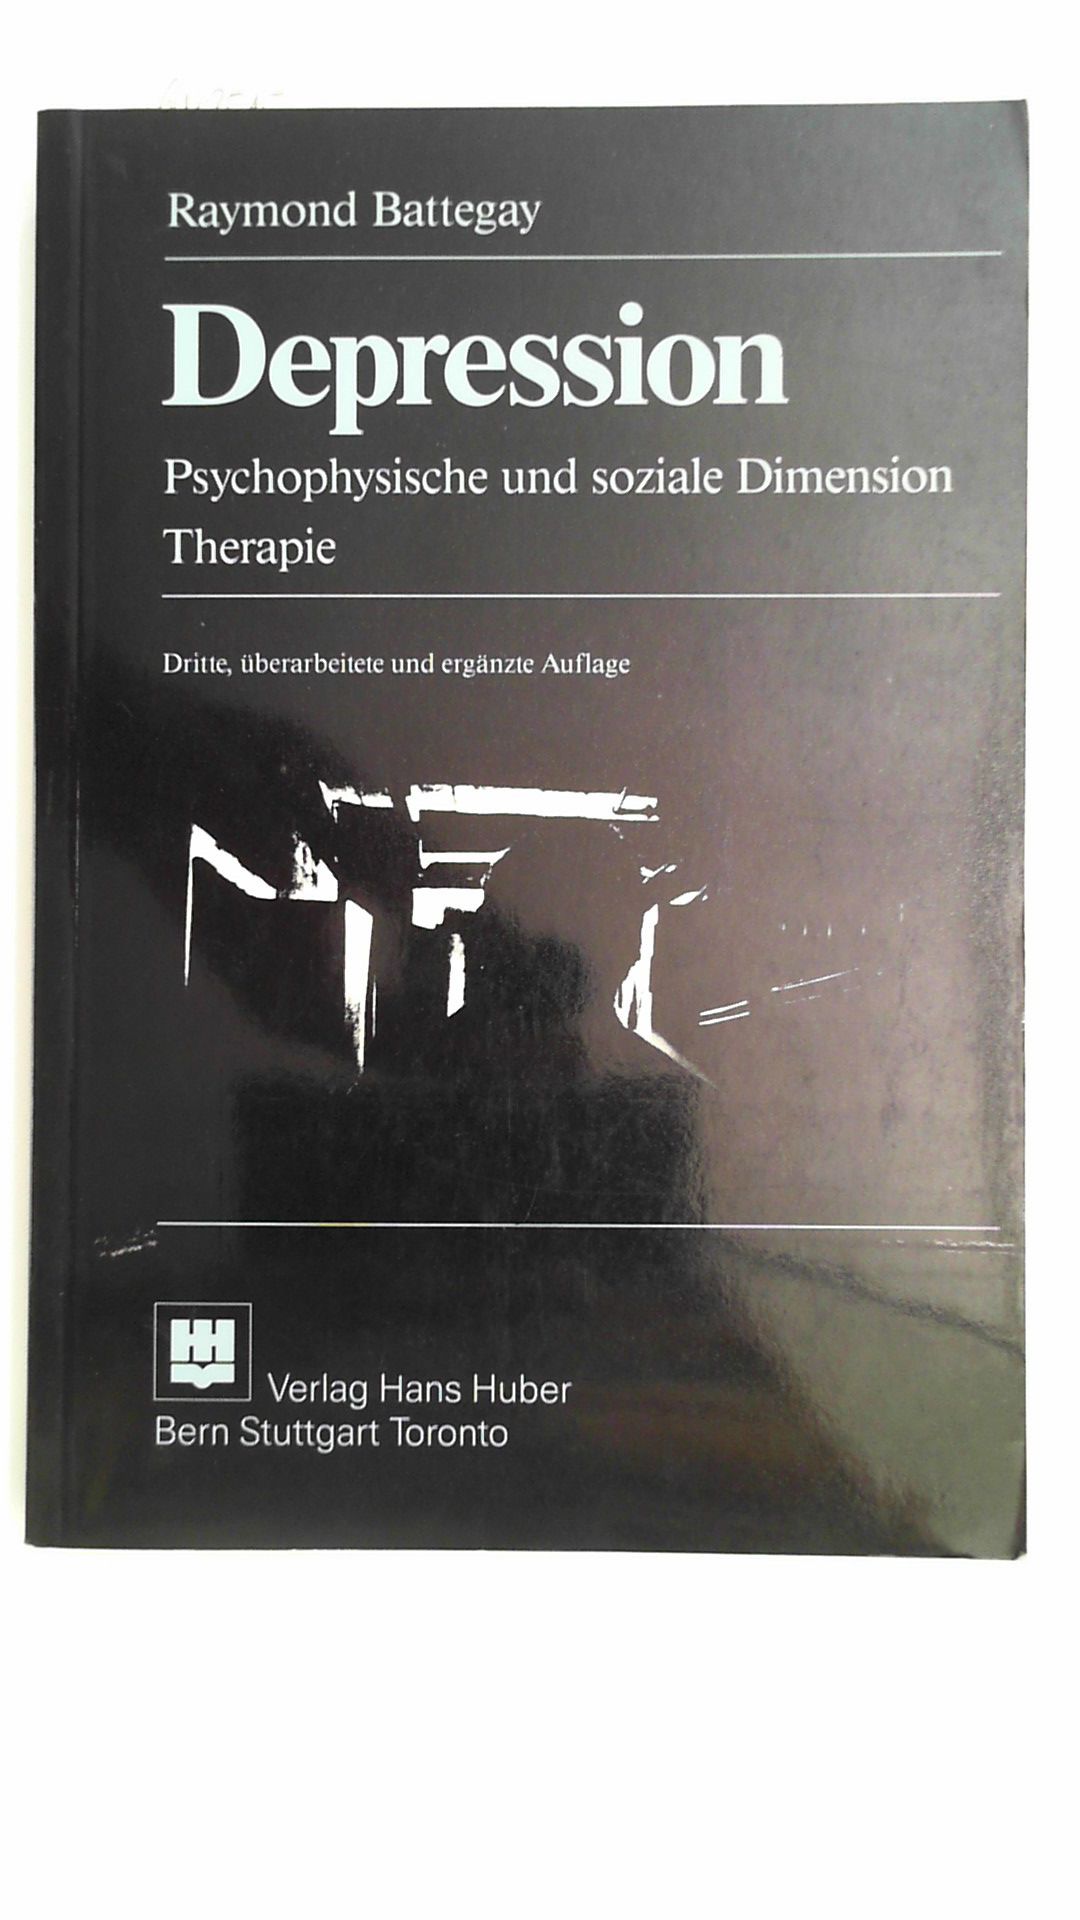 Depression: Psychophysische und soziale Dimension - Therapie, - Battegay, Raymond